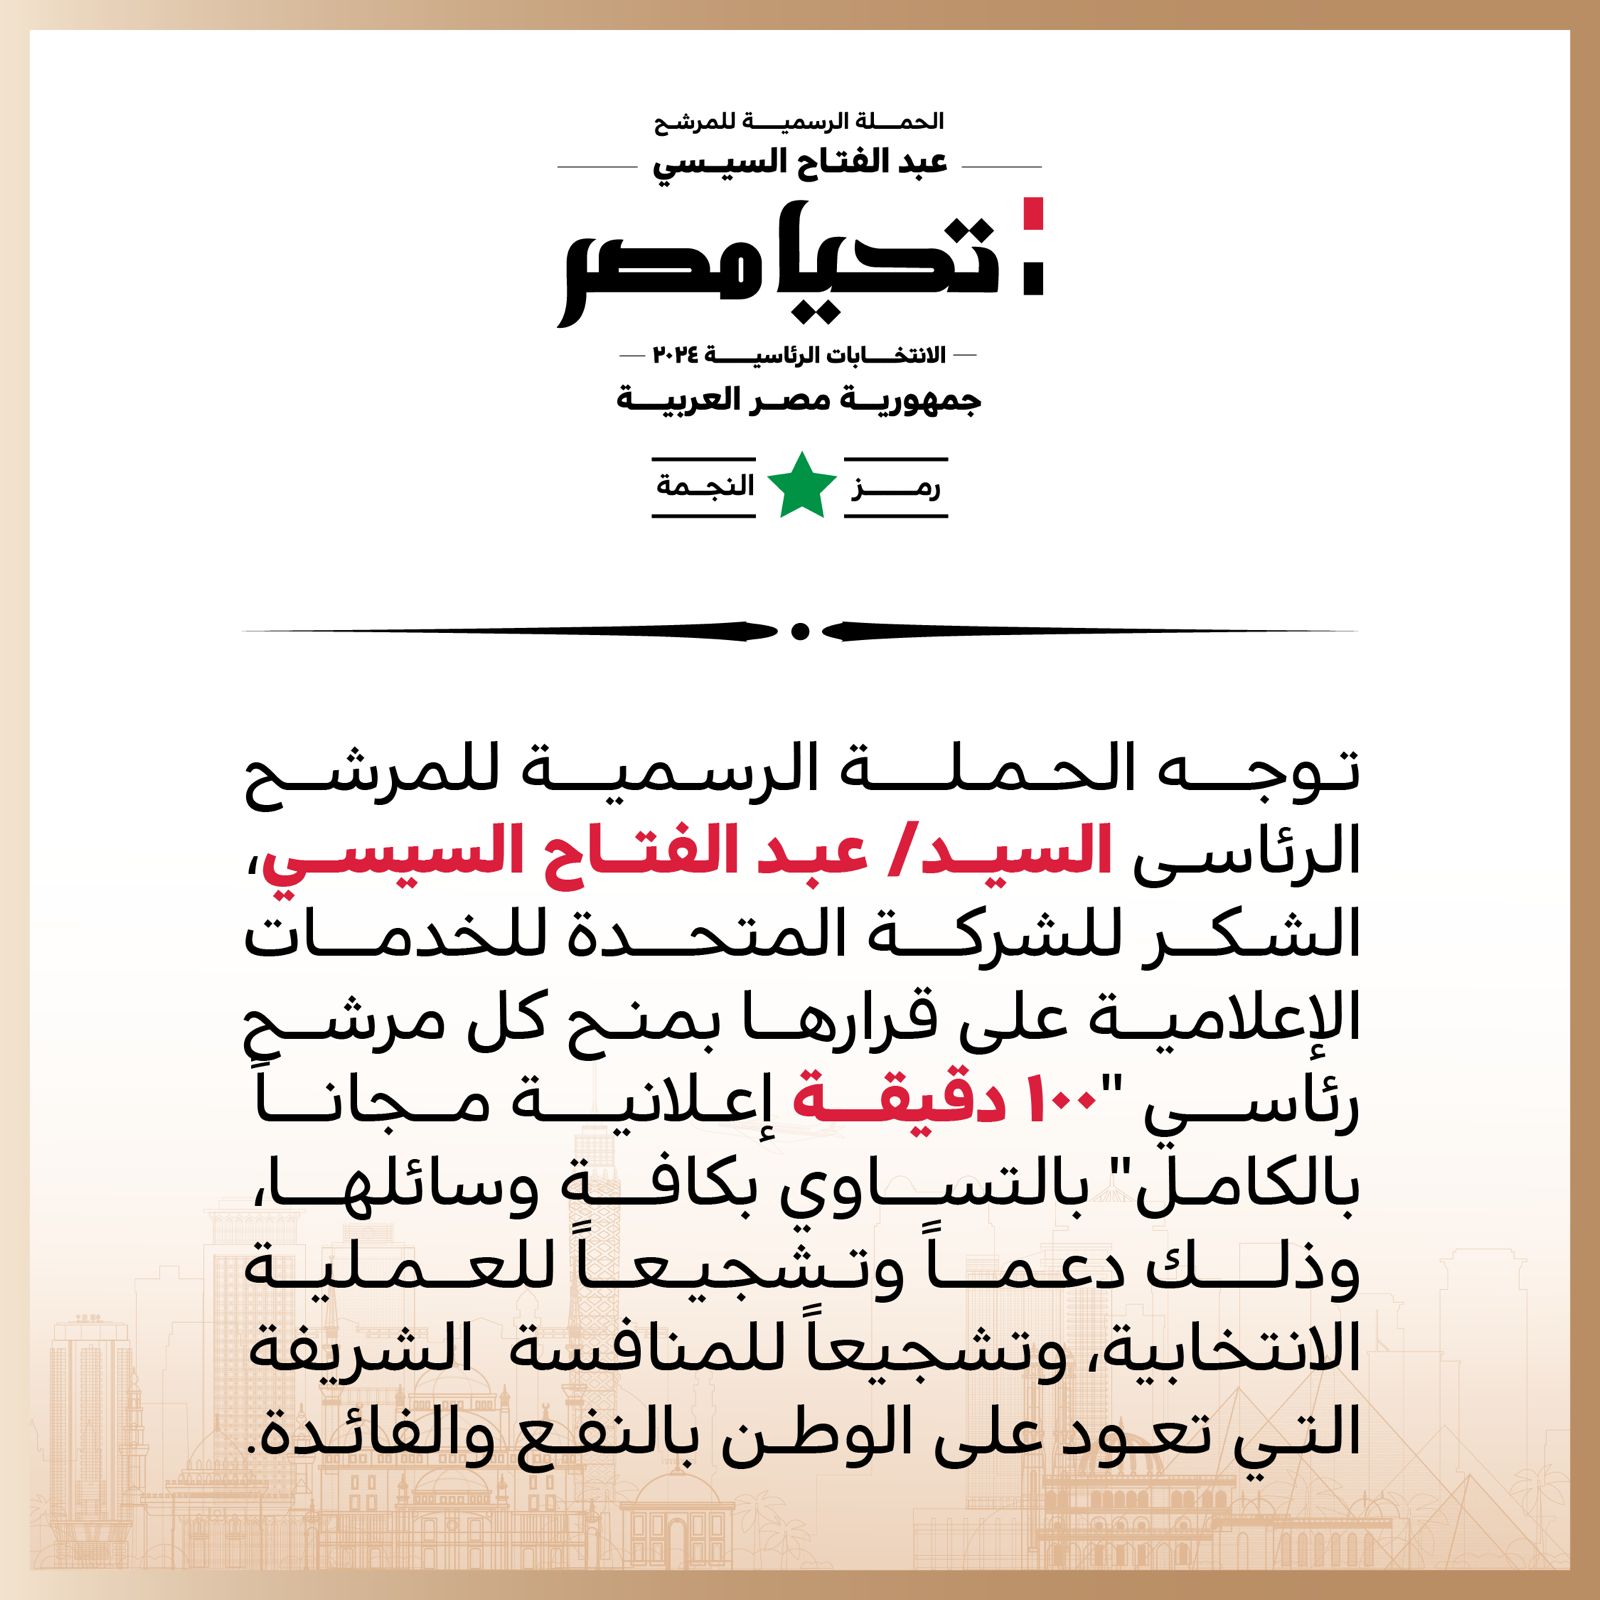 الحملة الرسمية للمرشح الرئاسى عبد الفتاح السيسى تشكر الشركة المتحدة على قرارها بمنح كل مرشح رئاسي 100 دقيقة إعلانية مجانًا